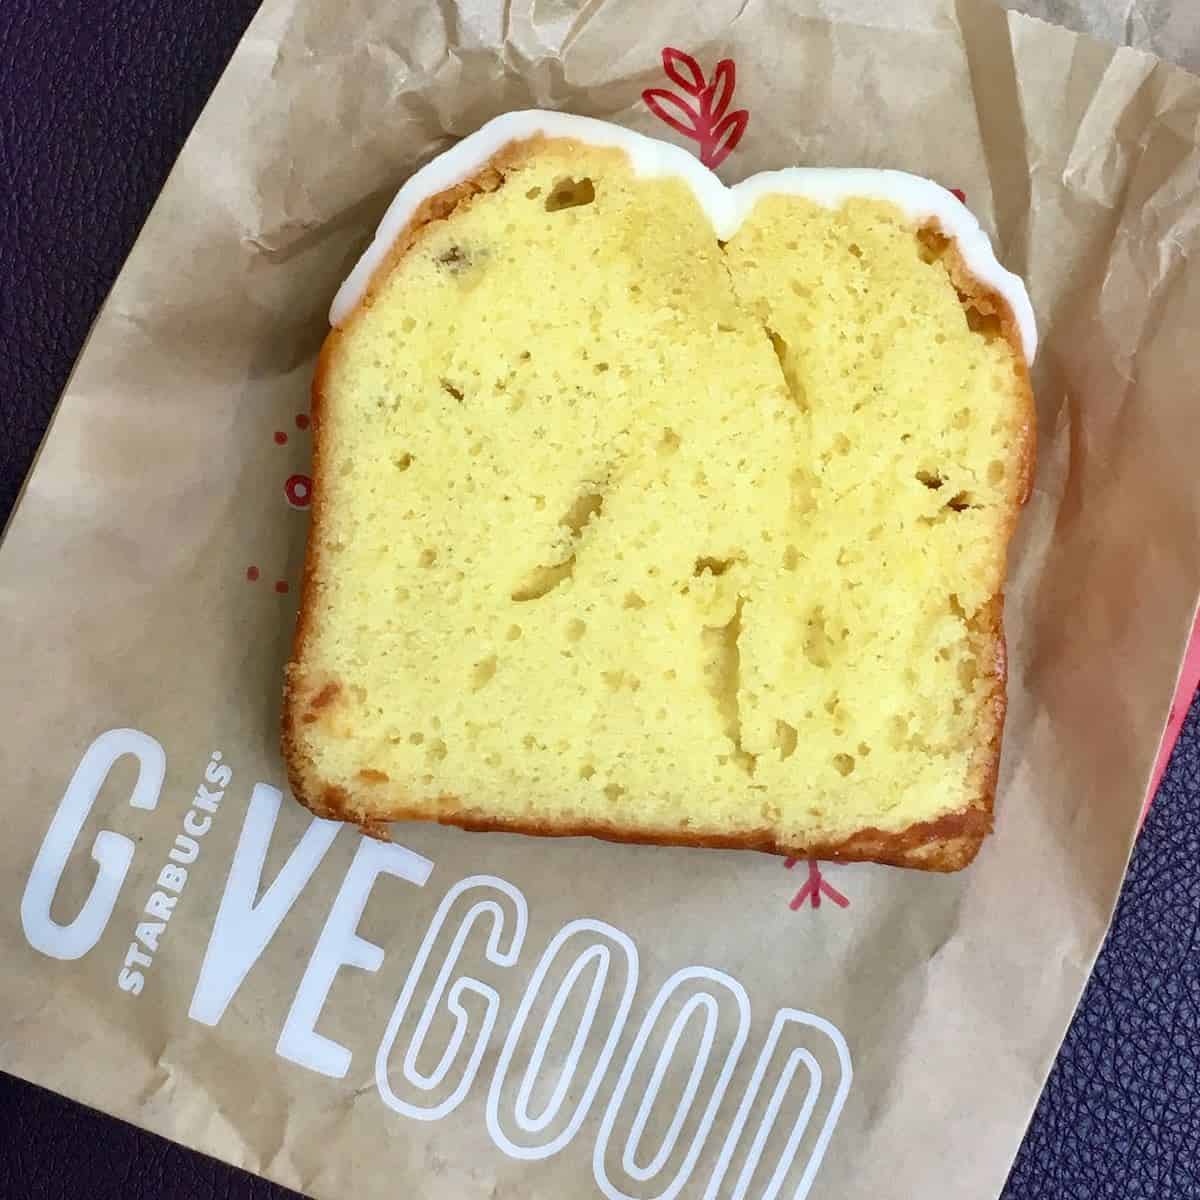 Starbucks lemon cake slice